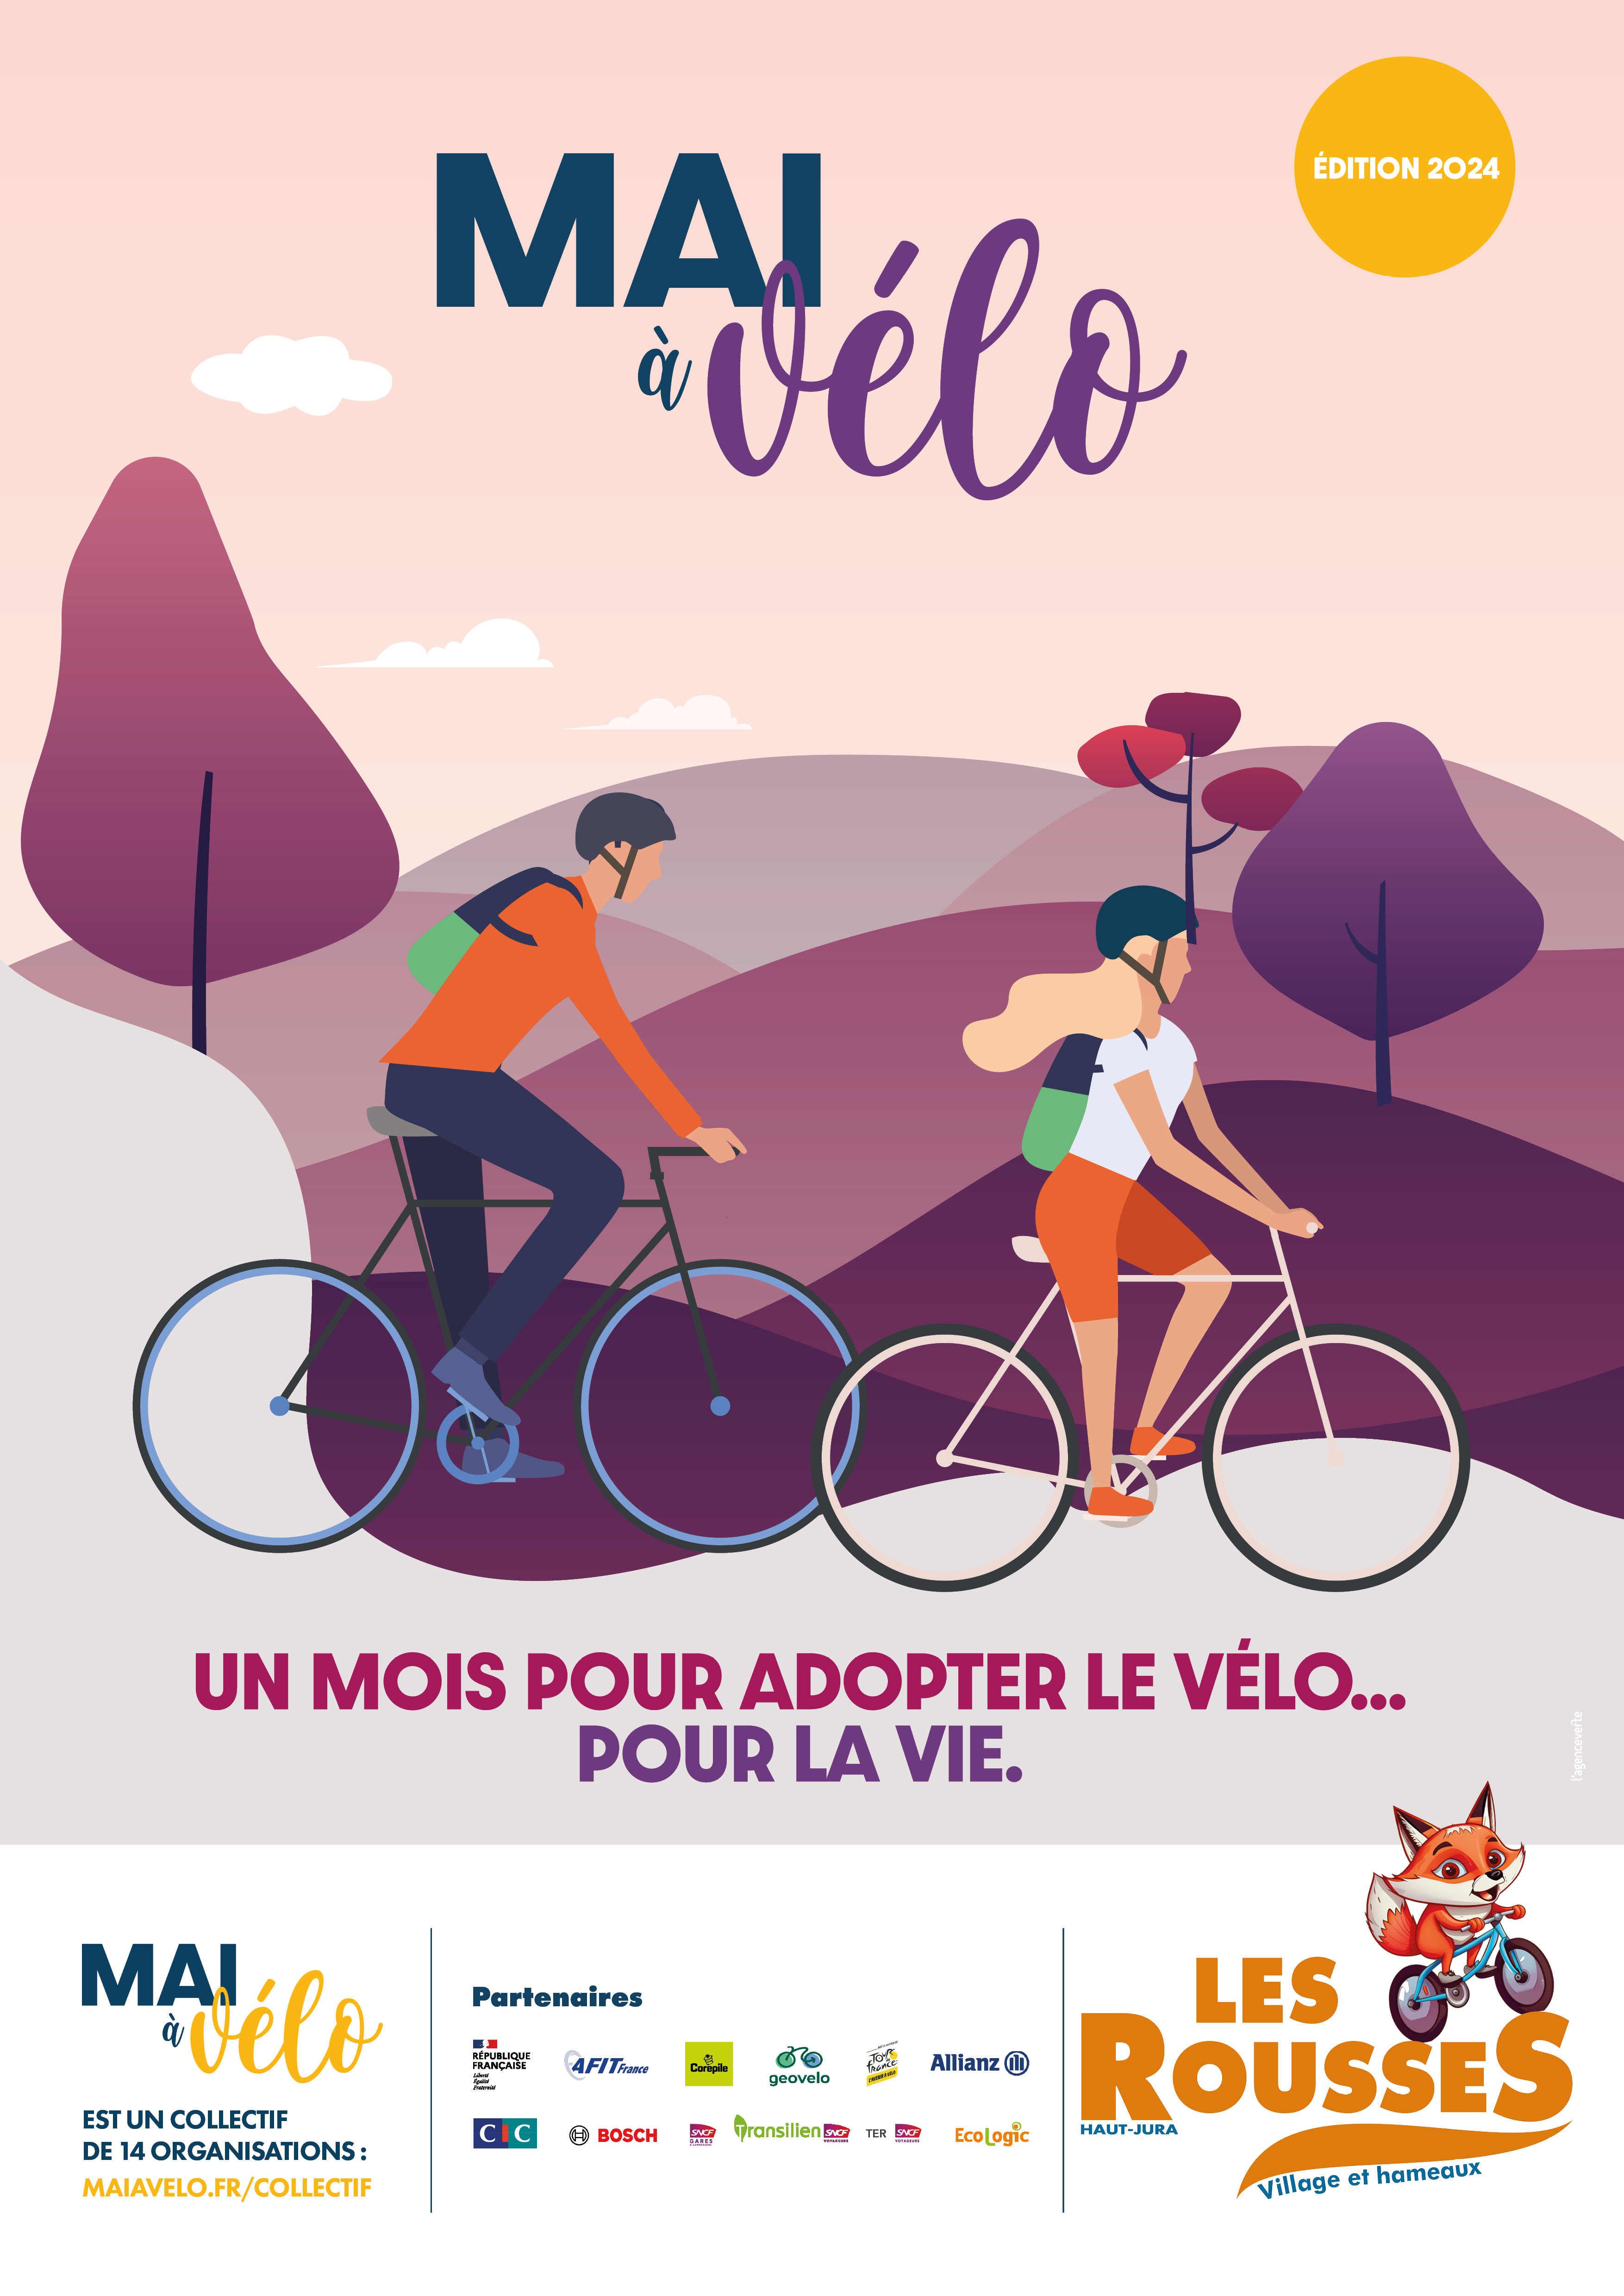 Rejoignez la communauté "Les Rousses" dans l'application GéoVélo pour participer au Challenge "Mai à Vélo"